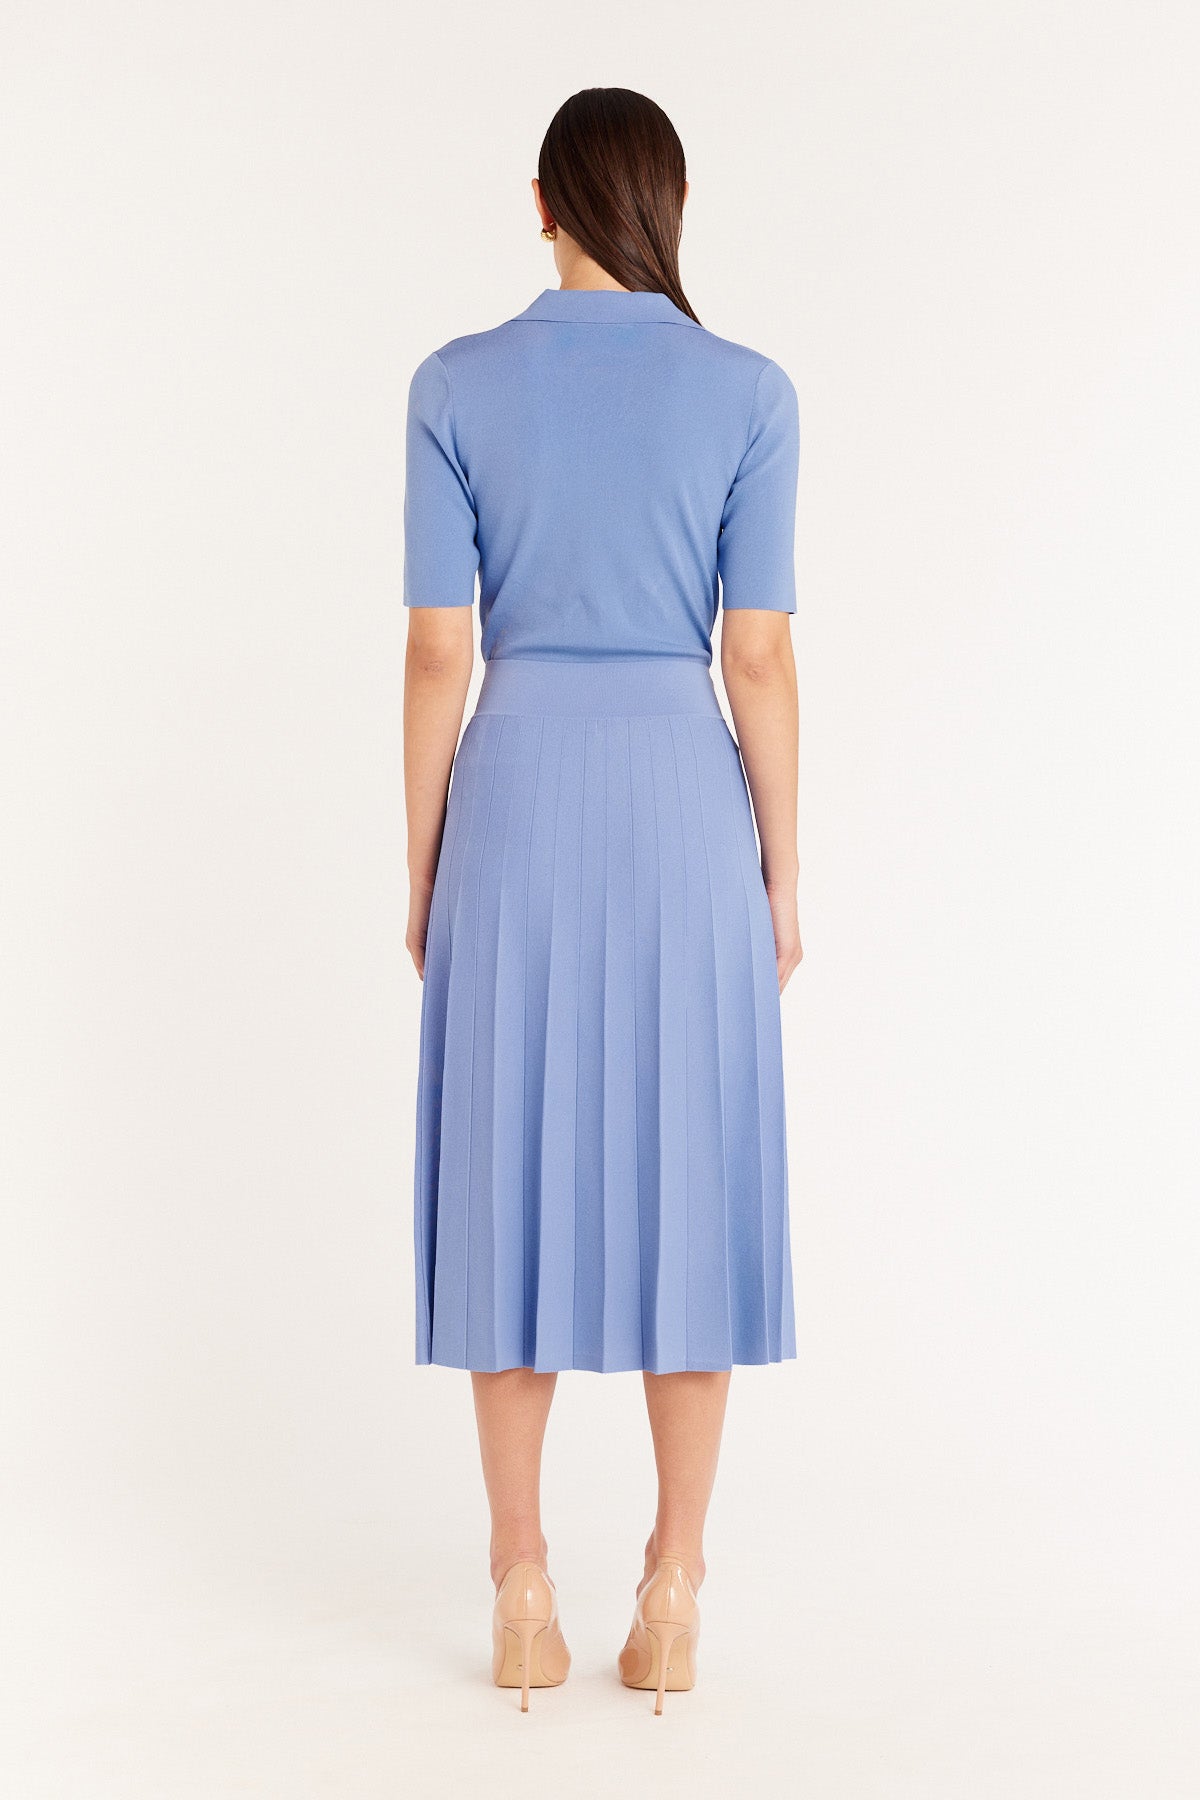 Sunray Knit Skirt - Bluebell - Perri Cutten